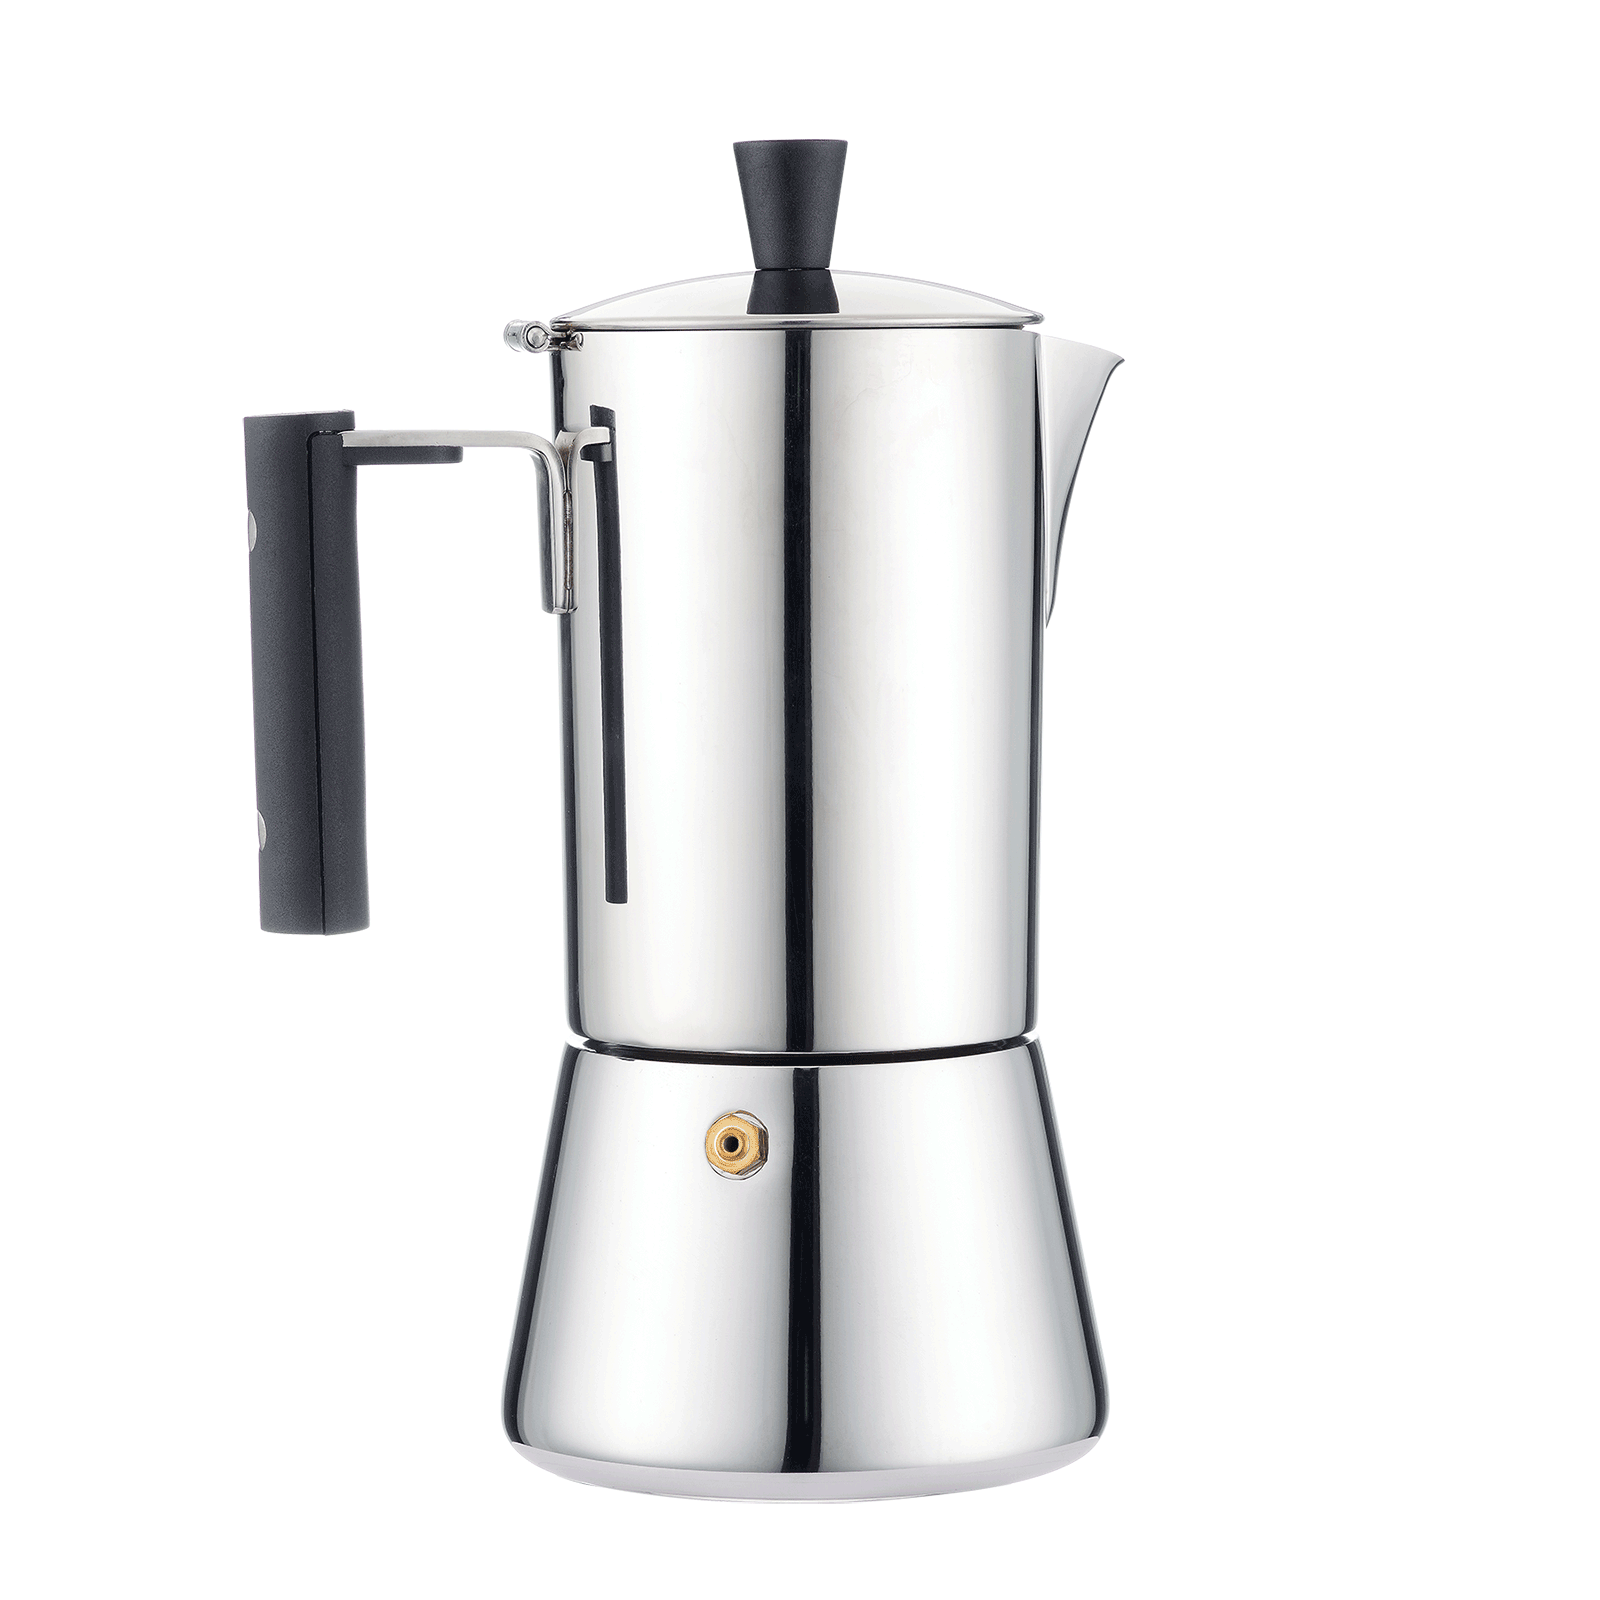  Easyworkz Pedro Stovetop Espresso Maker 6Cup 300ml